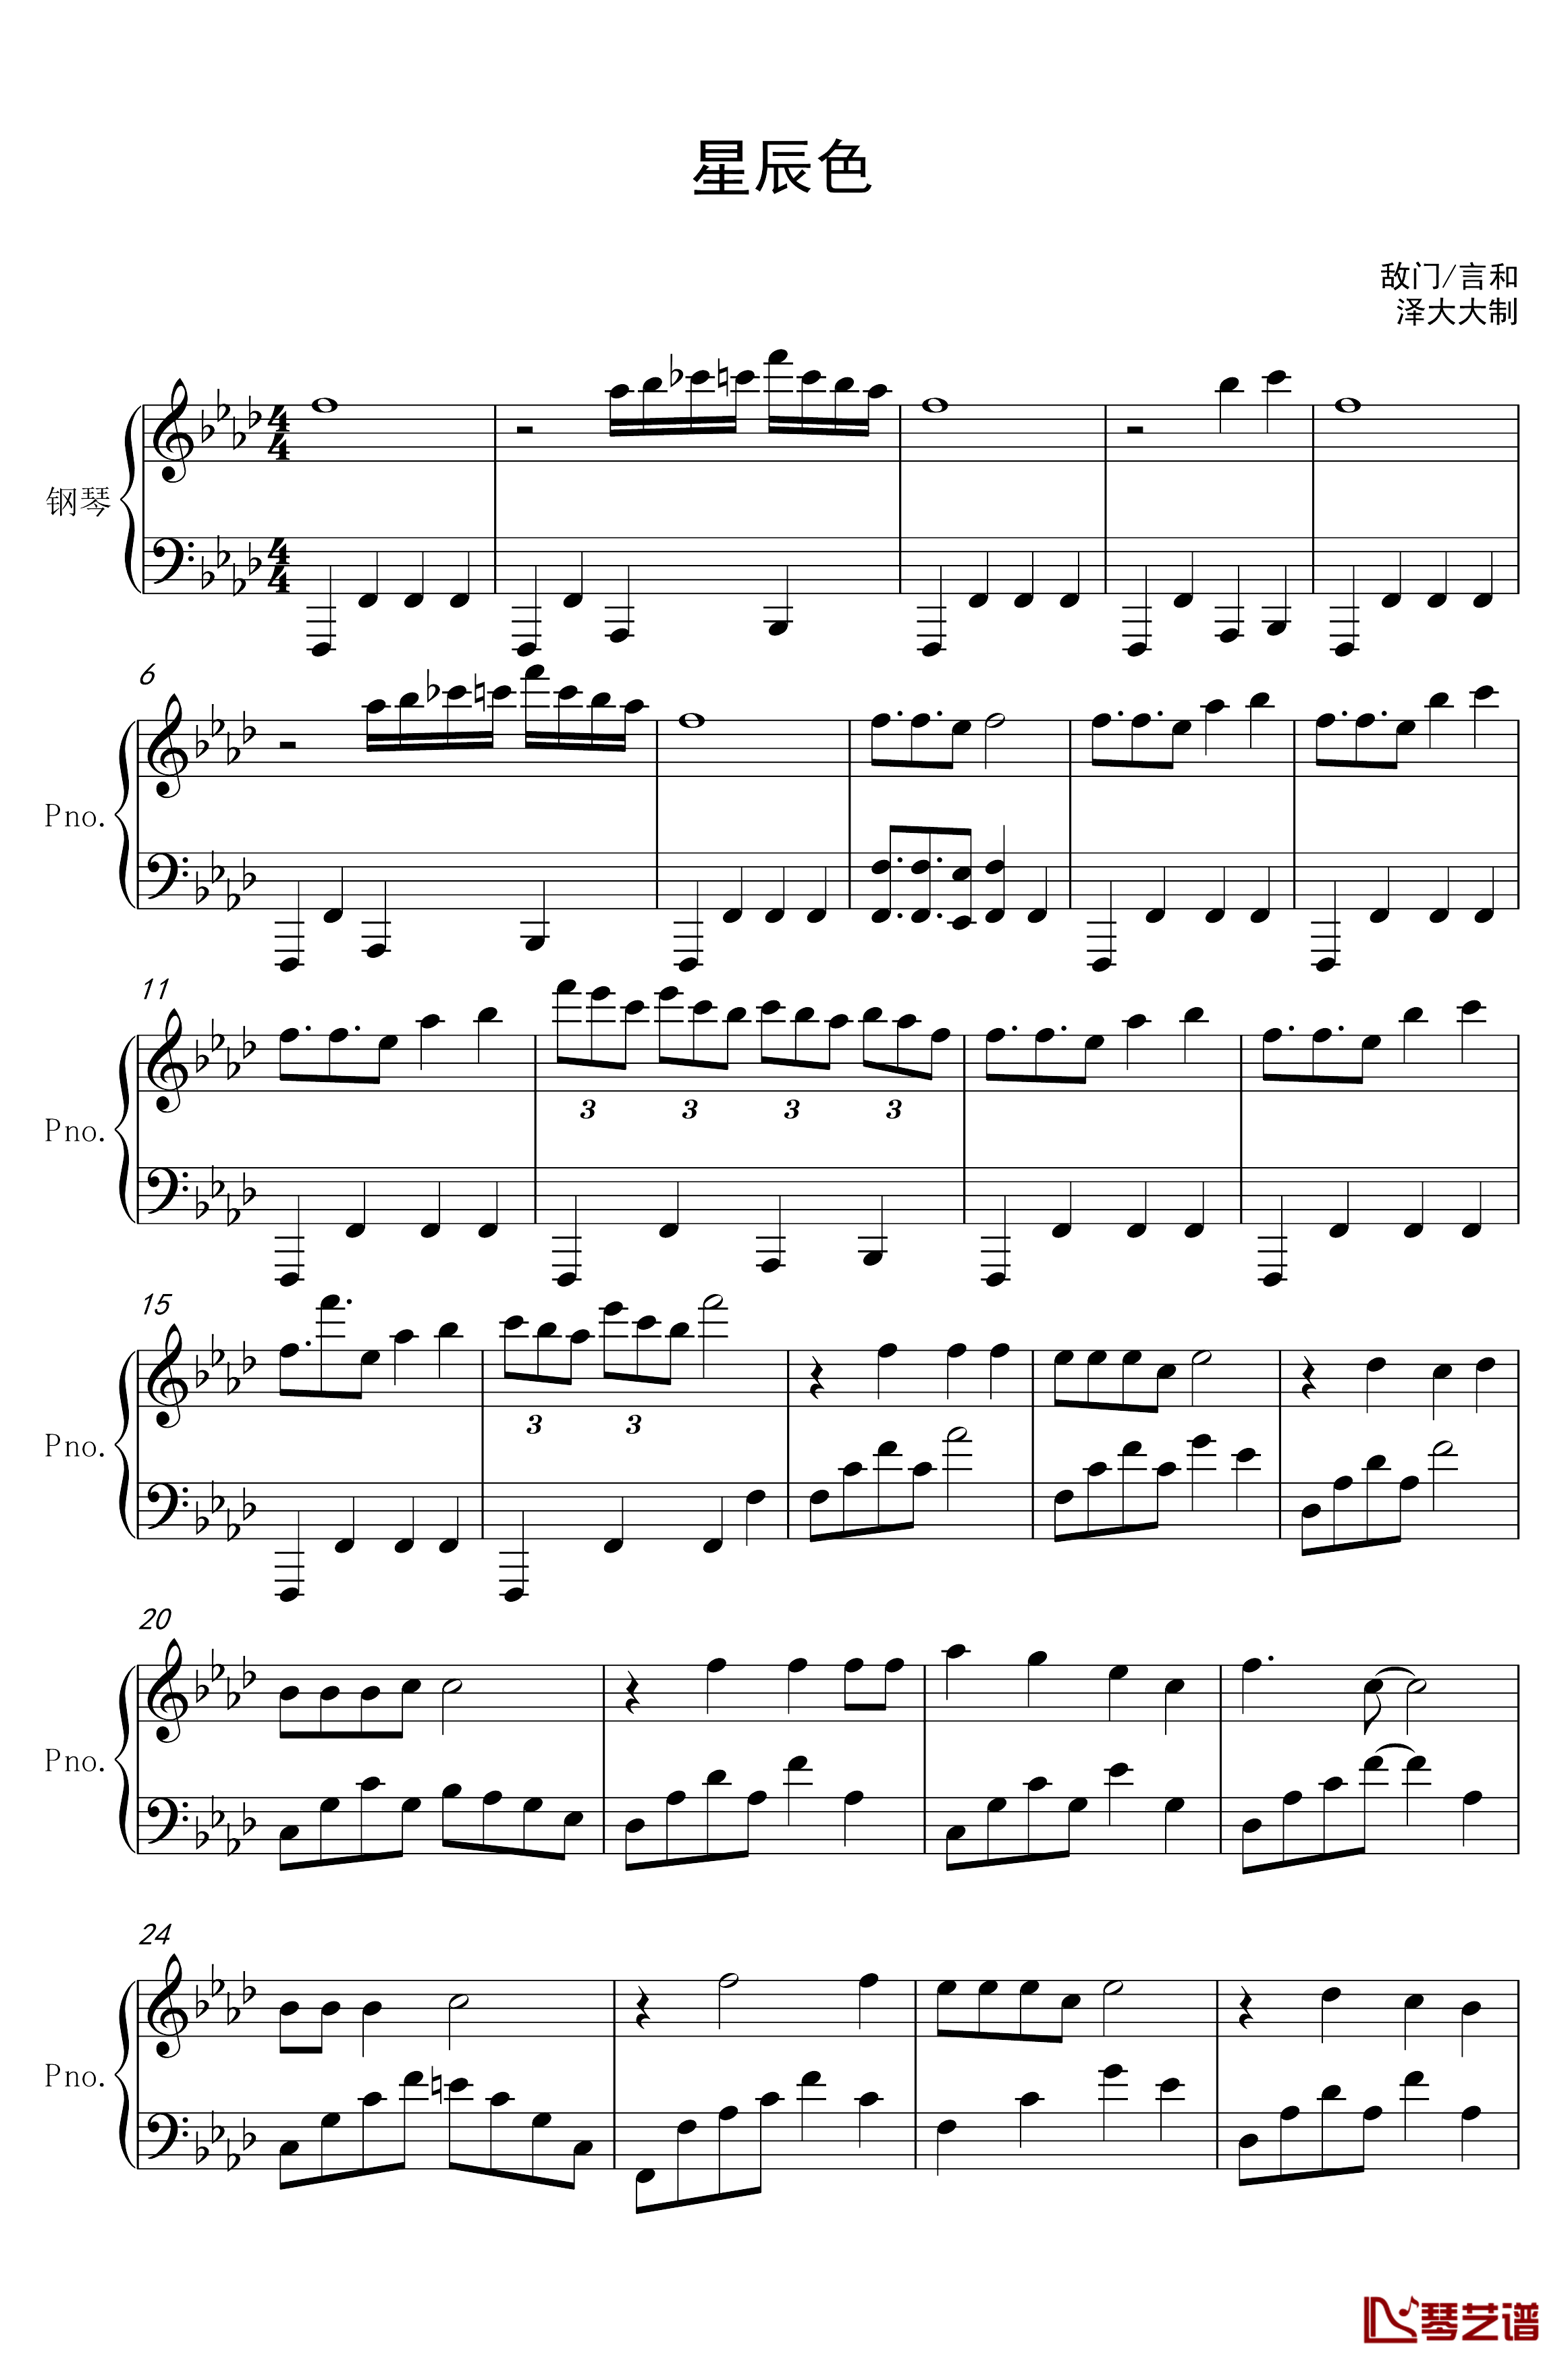 星辰色钢琴谱-独奏版1